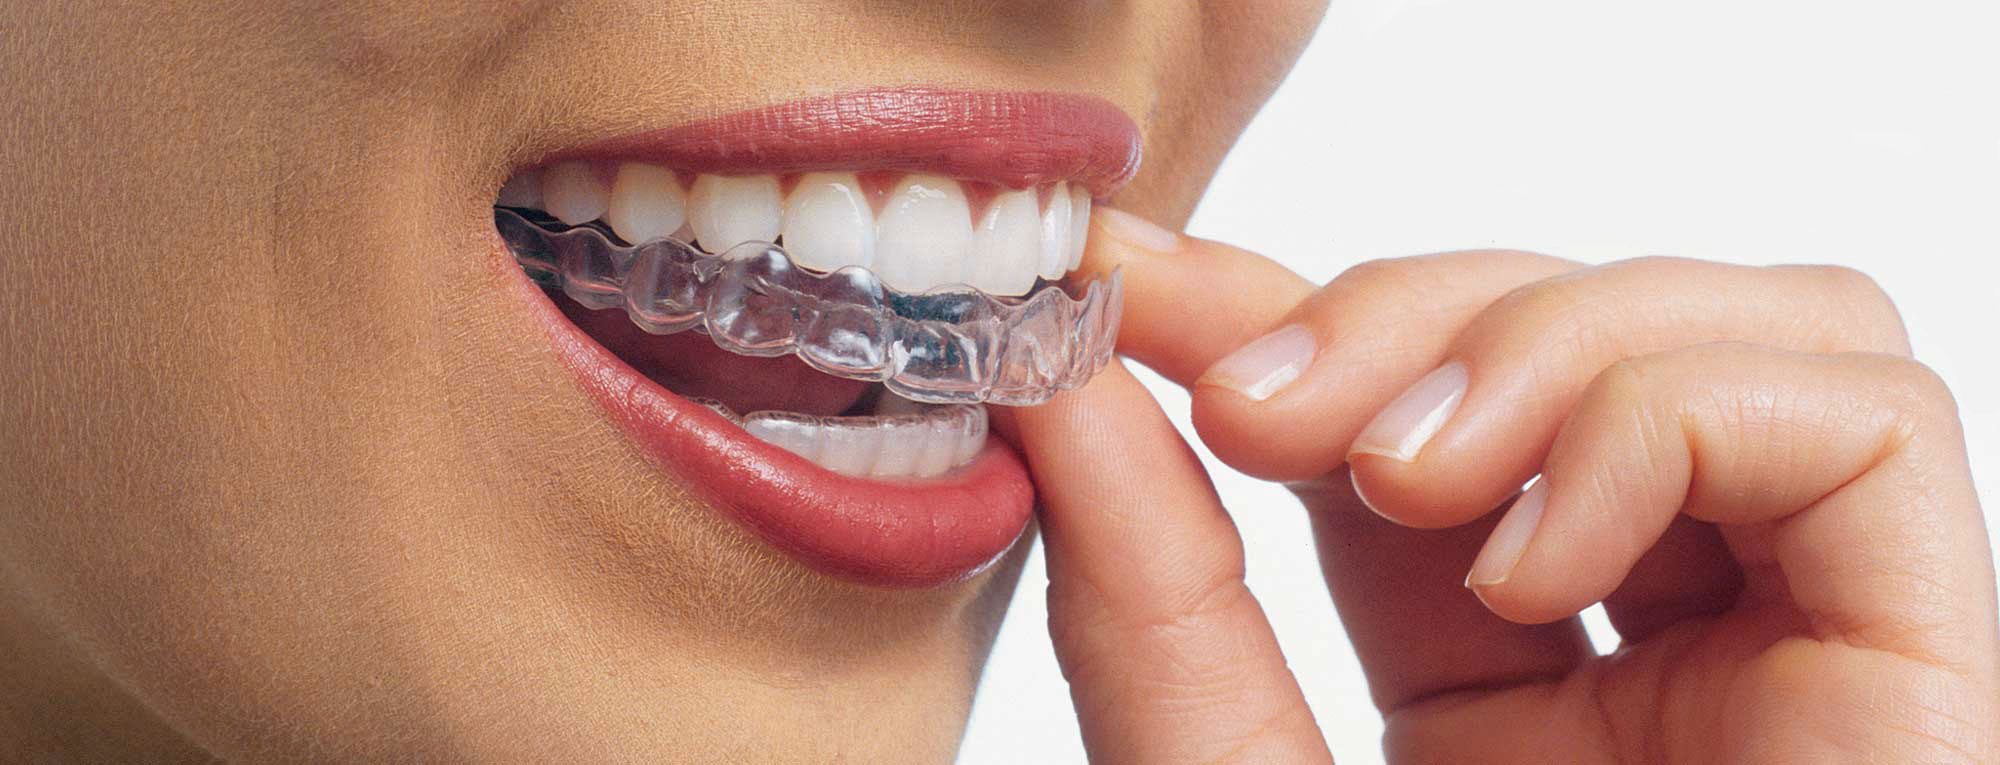 
Les appareils dentaires en orthodontie : guide complet du Dr Asselborn